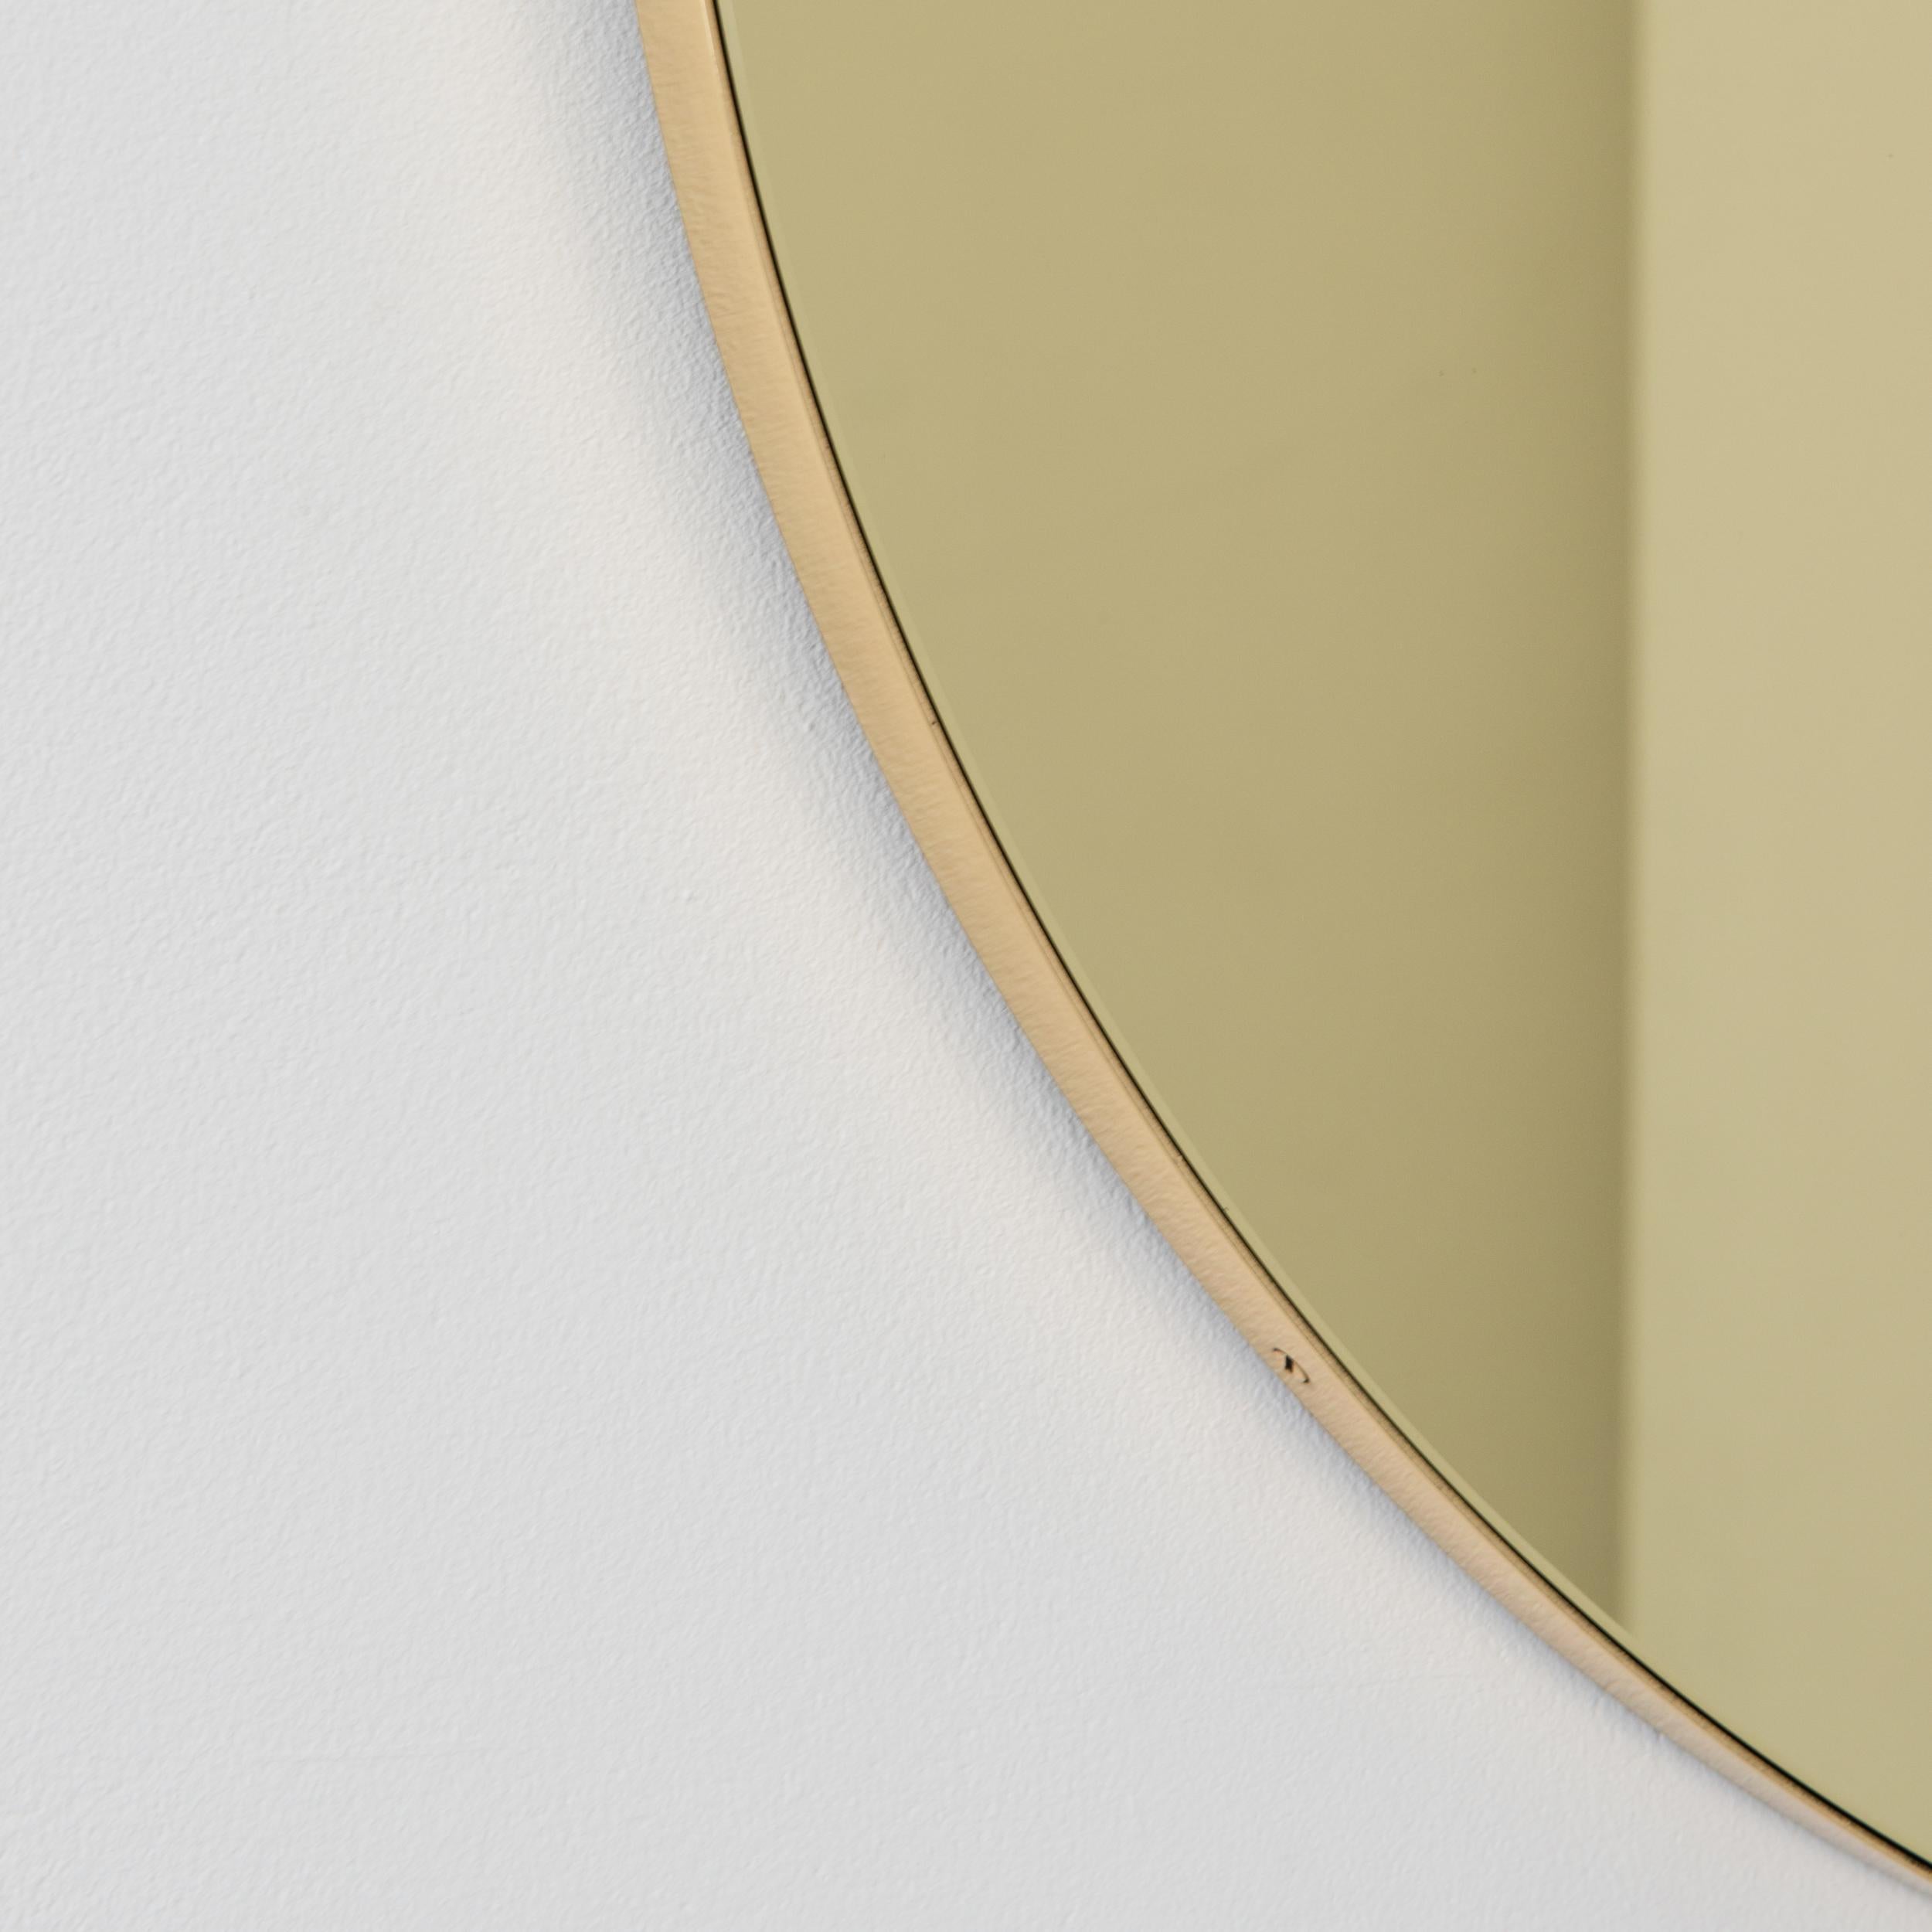 round mirror with golden frame